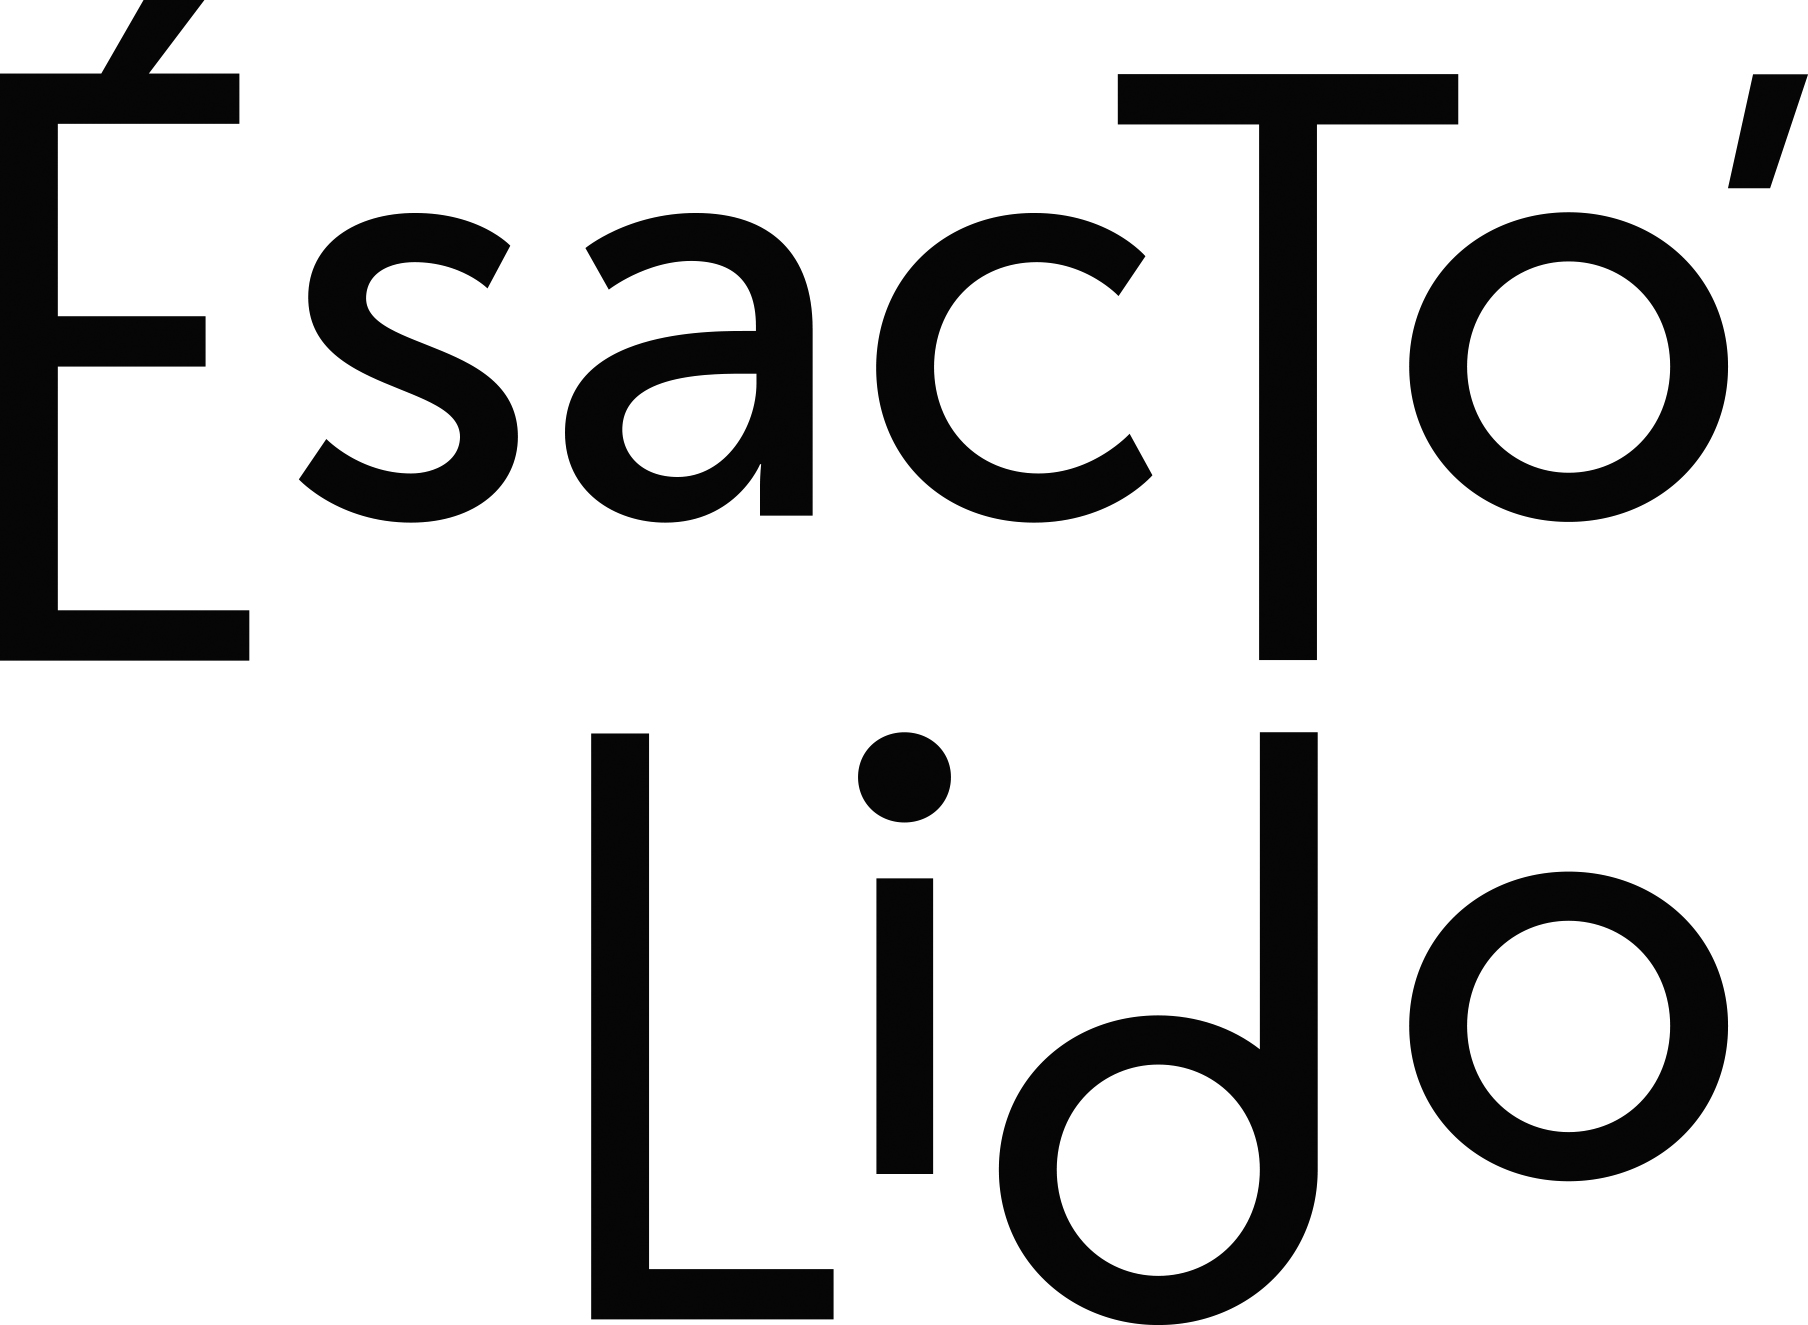 logo de l'Esacto'Lido